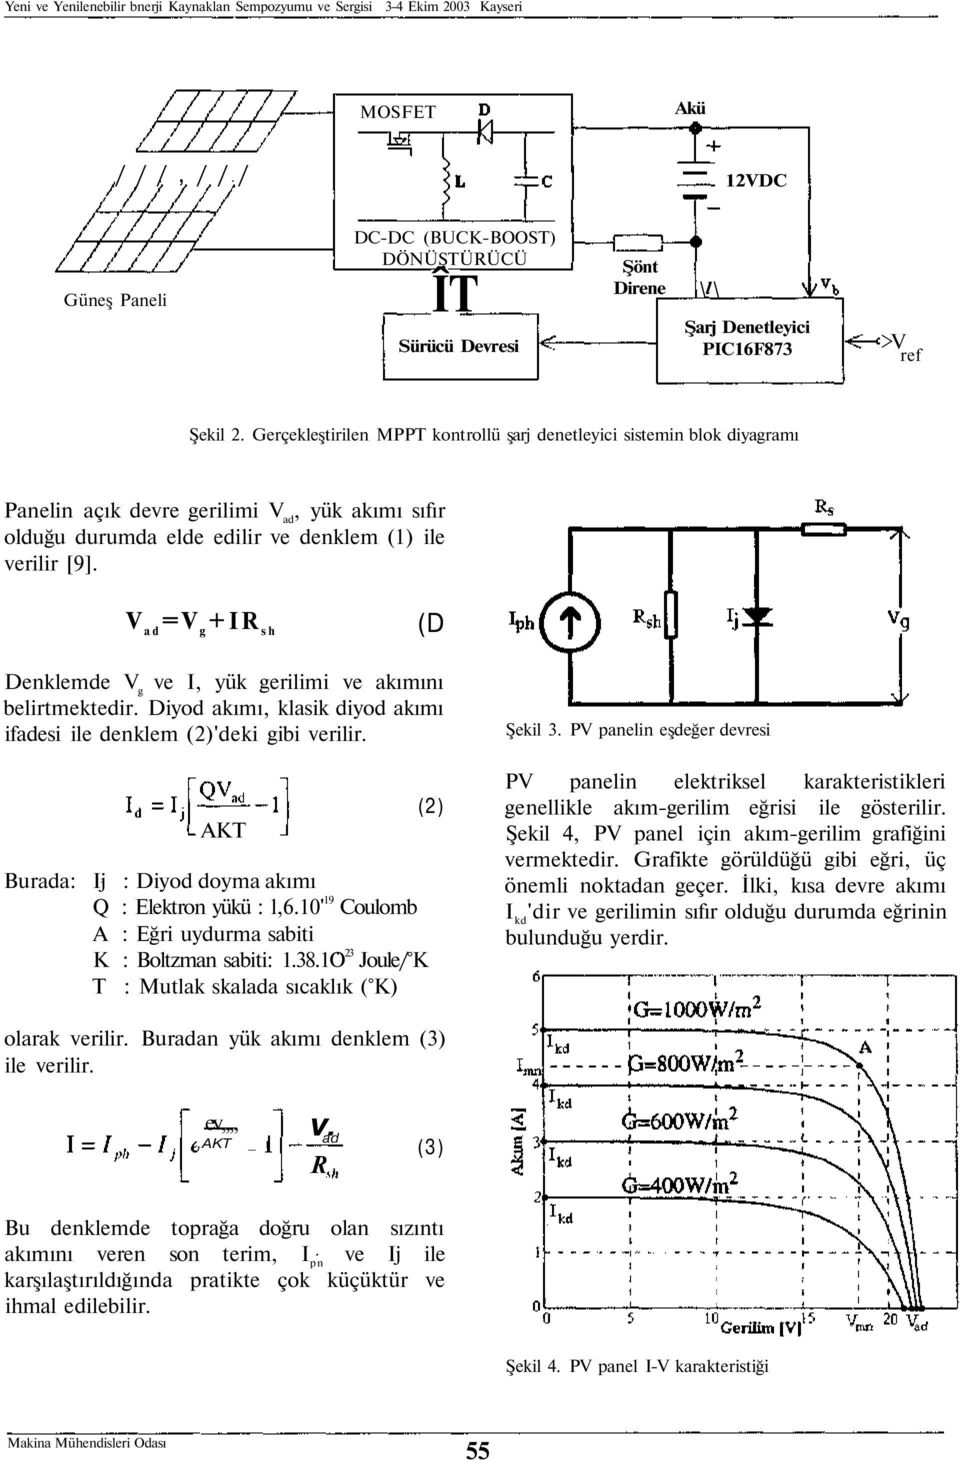 Gerçekleştirilen MPPT kontrollü şarj denetleyici sistemin blok diyagramı Panelin açık devre gerilimi V ad, yük akımı sıfır olduğu durumda elde edilir ve denklem (1) ile verilir [9].